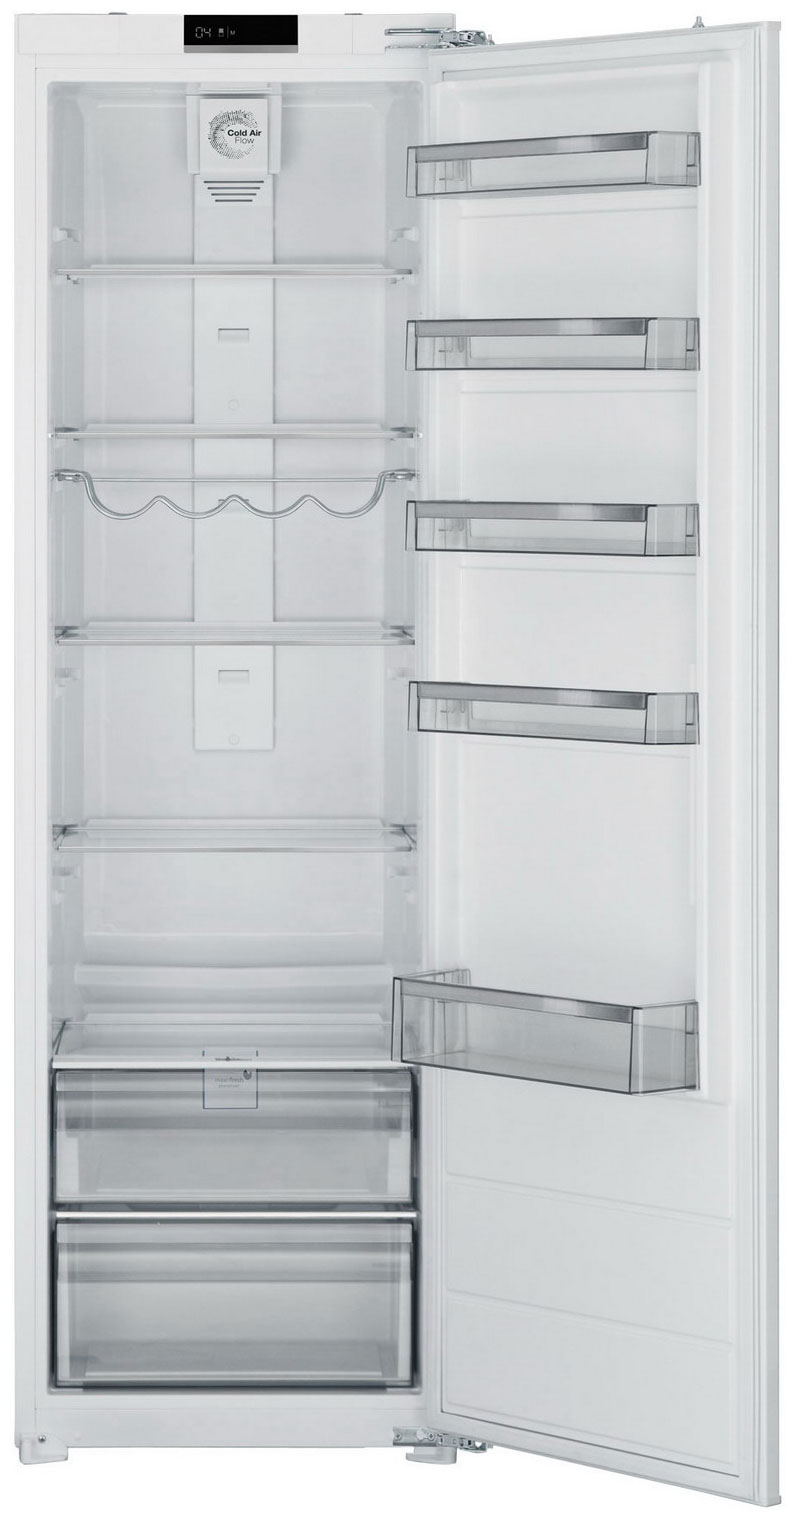 Встраиваемый однокамерный холодильник Jacky's JL BW 1770 встраиваемый холодильник kuppersberg srb 1770